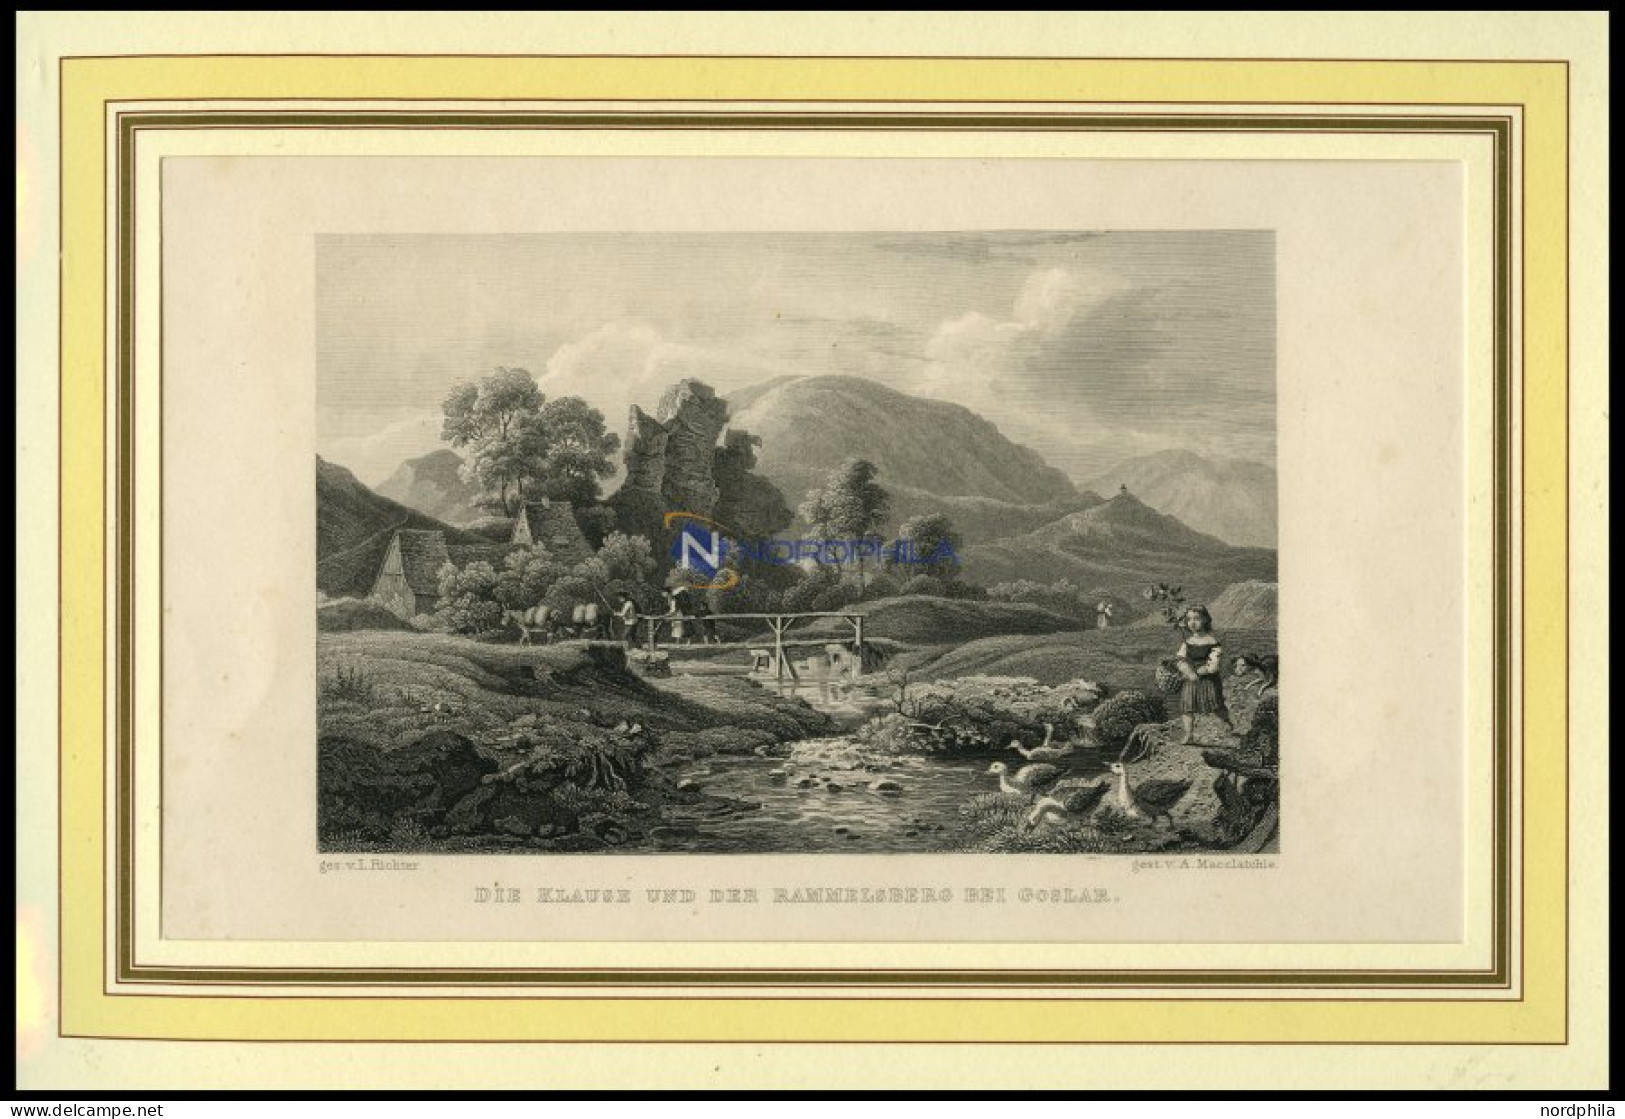 Bei GOSLAR: Die Klause Und Der Rammelsberg, Stahlstich Von Richter/Macclatchie Um 1840 - Prints & Engravings